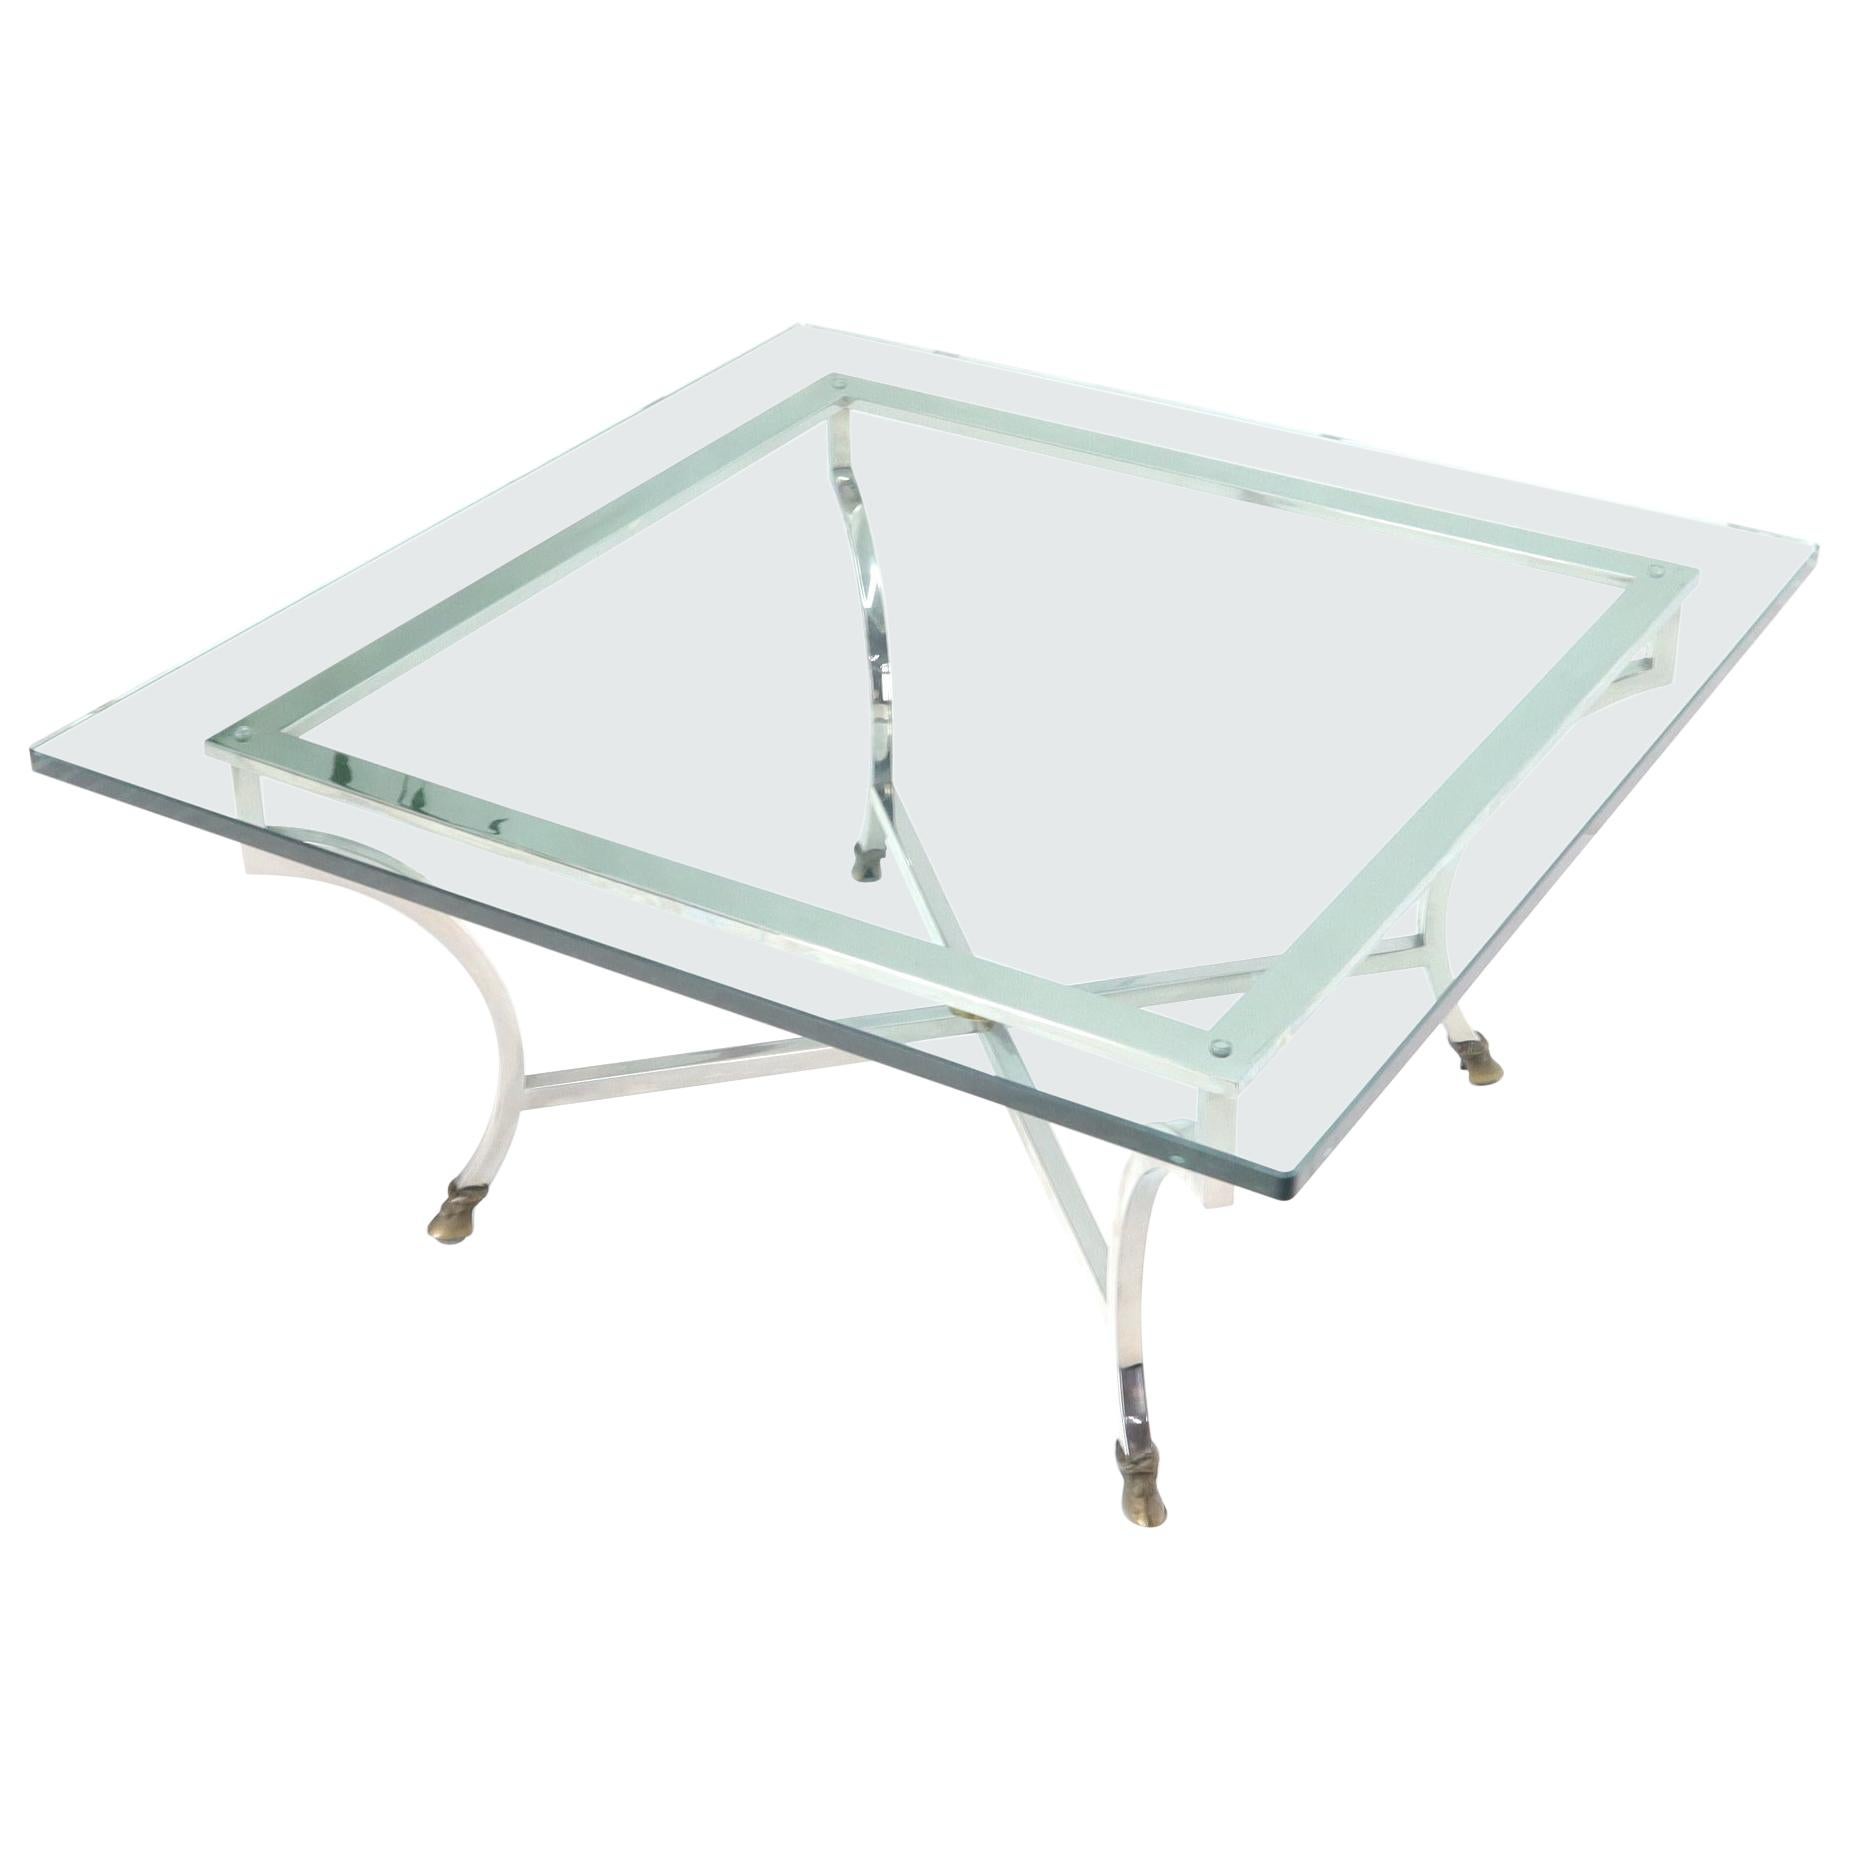 Table basse carrée à pied en sabot chromé et laiton, plateau épais en verre